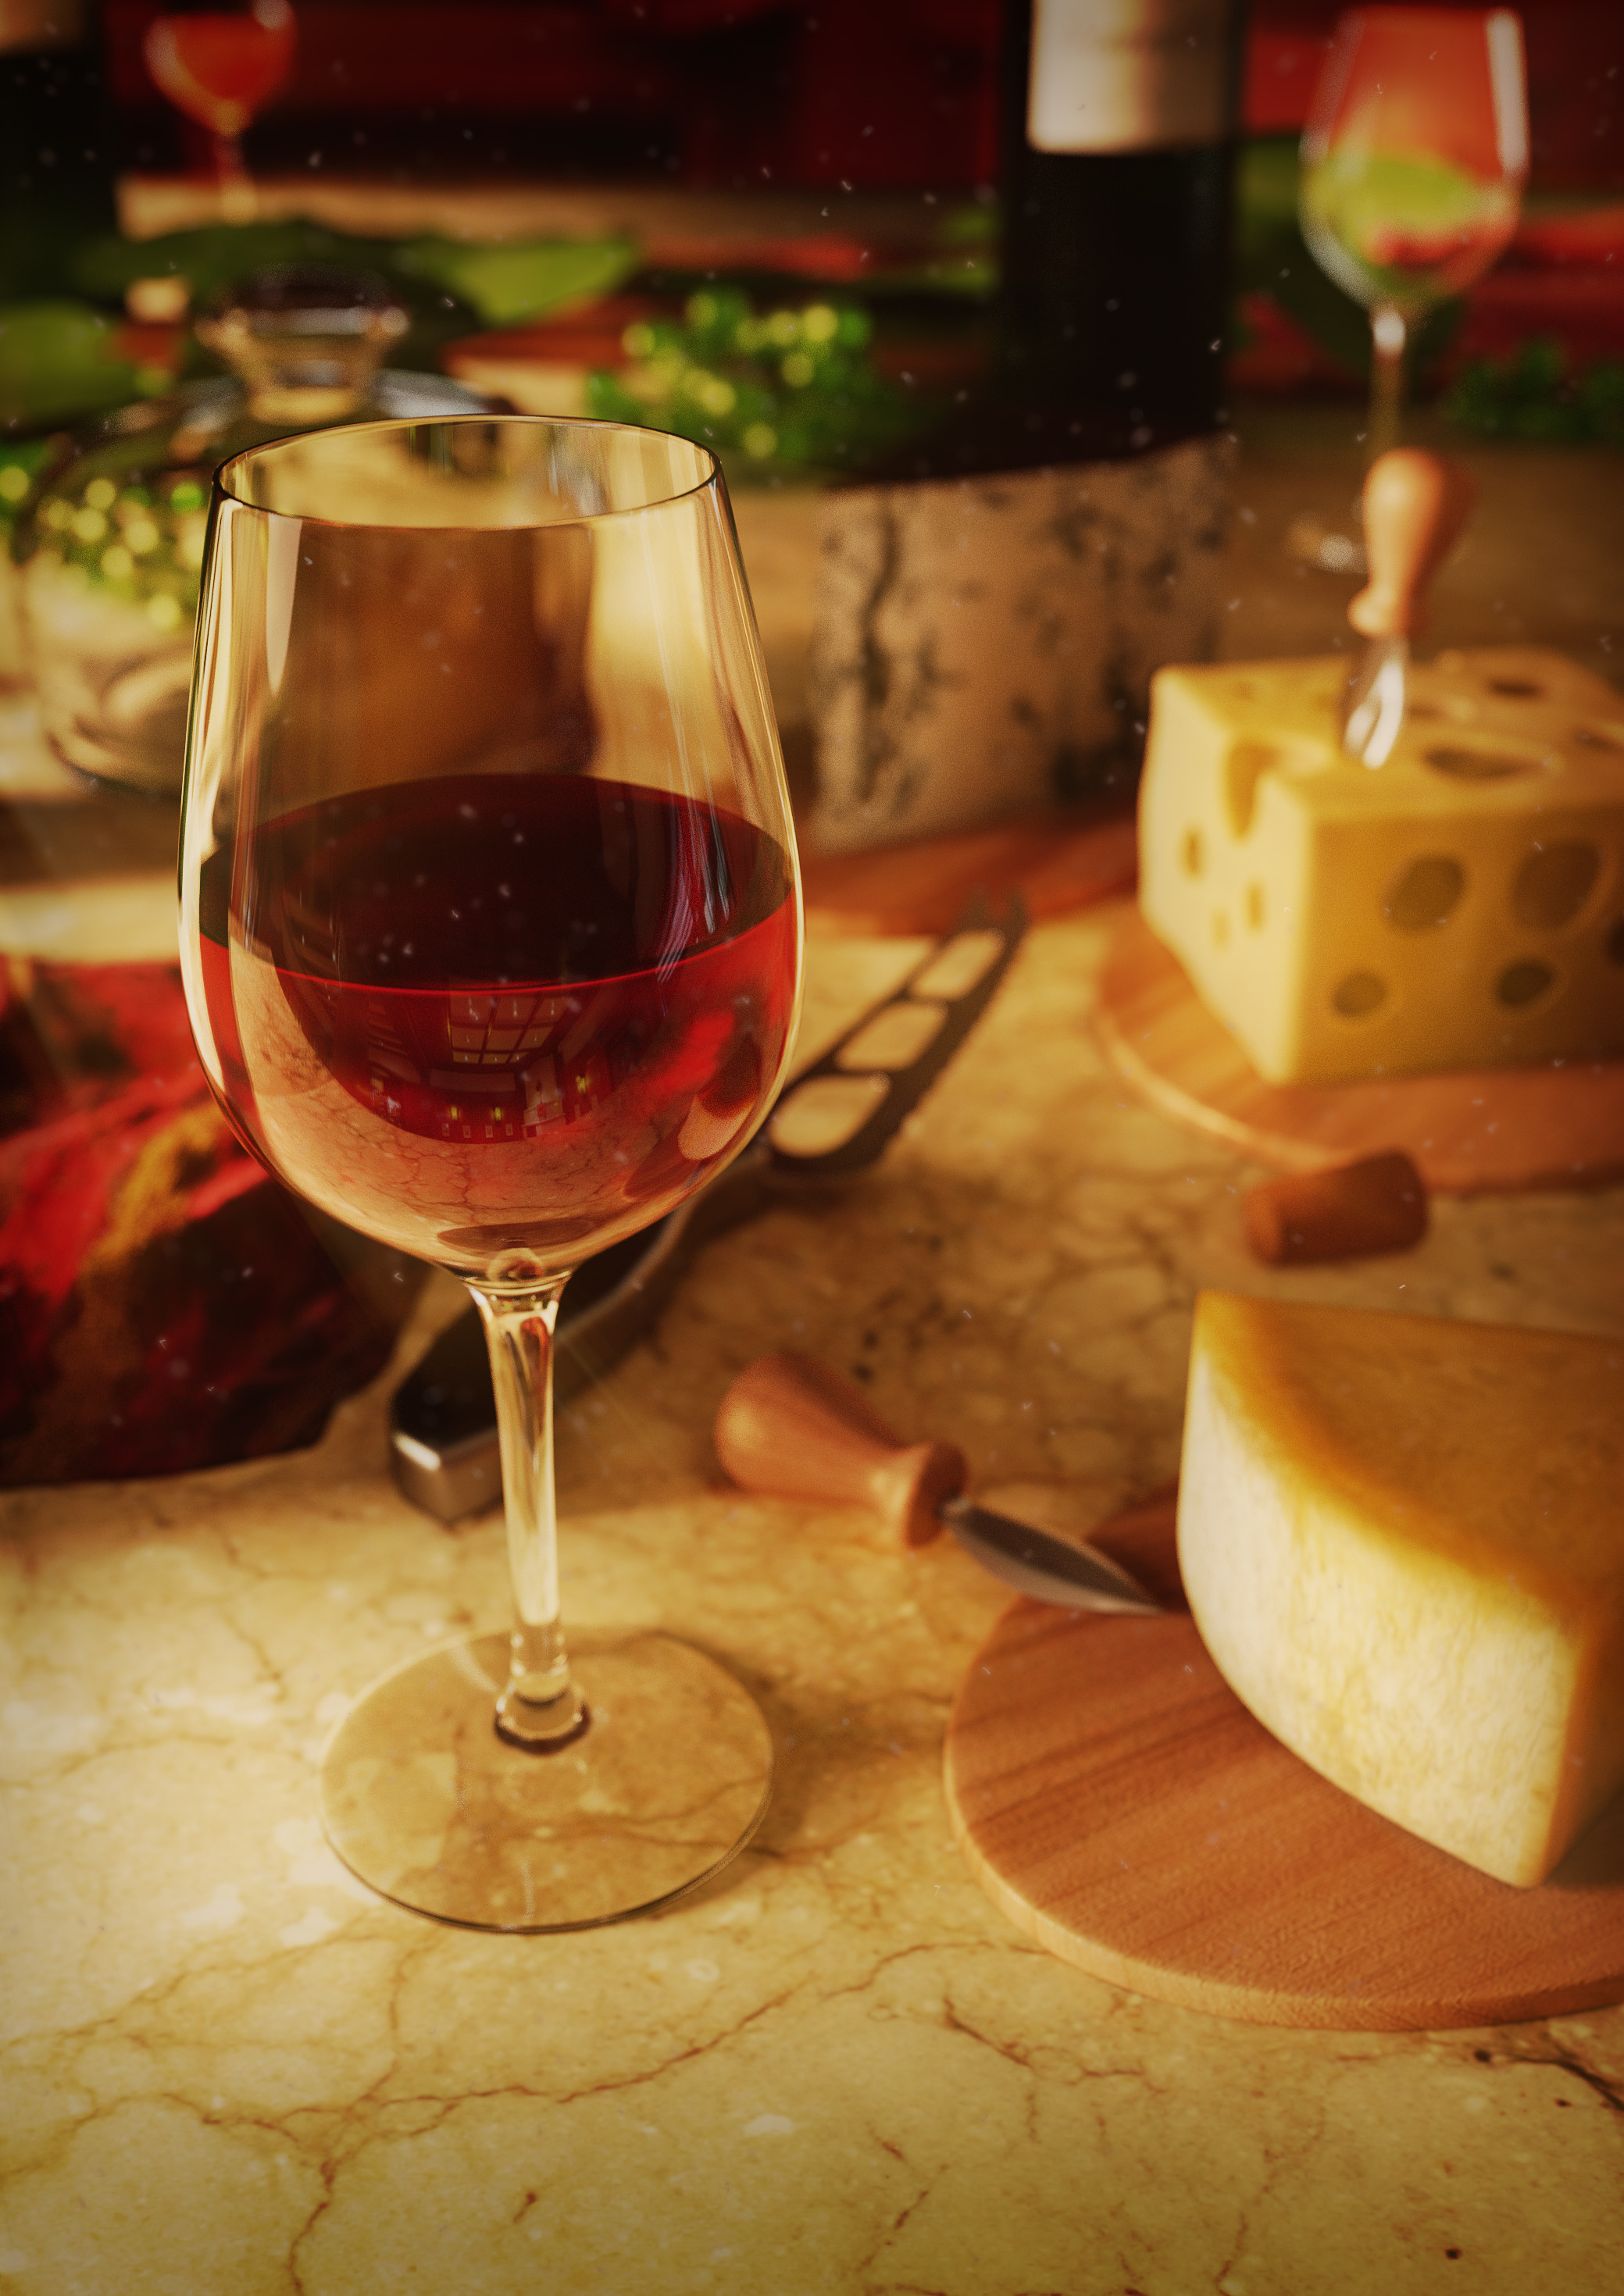 Ewa Wierbik Cheese CGi 3D Wine Glass Digital Art Red Wine Food Artwork Wine Portrait Display ArtStat 2079x2940